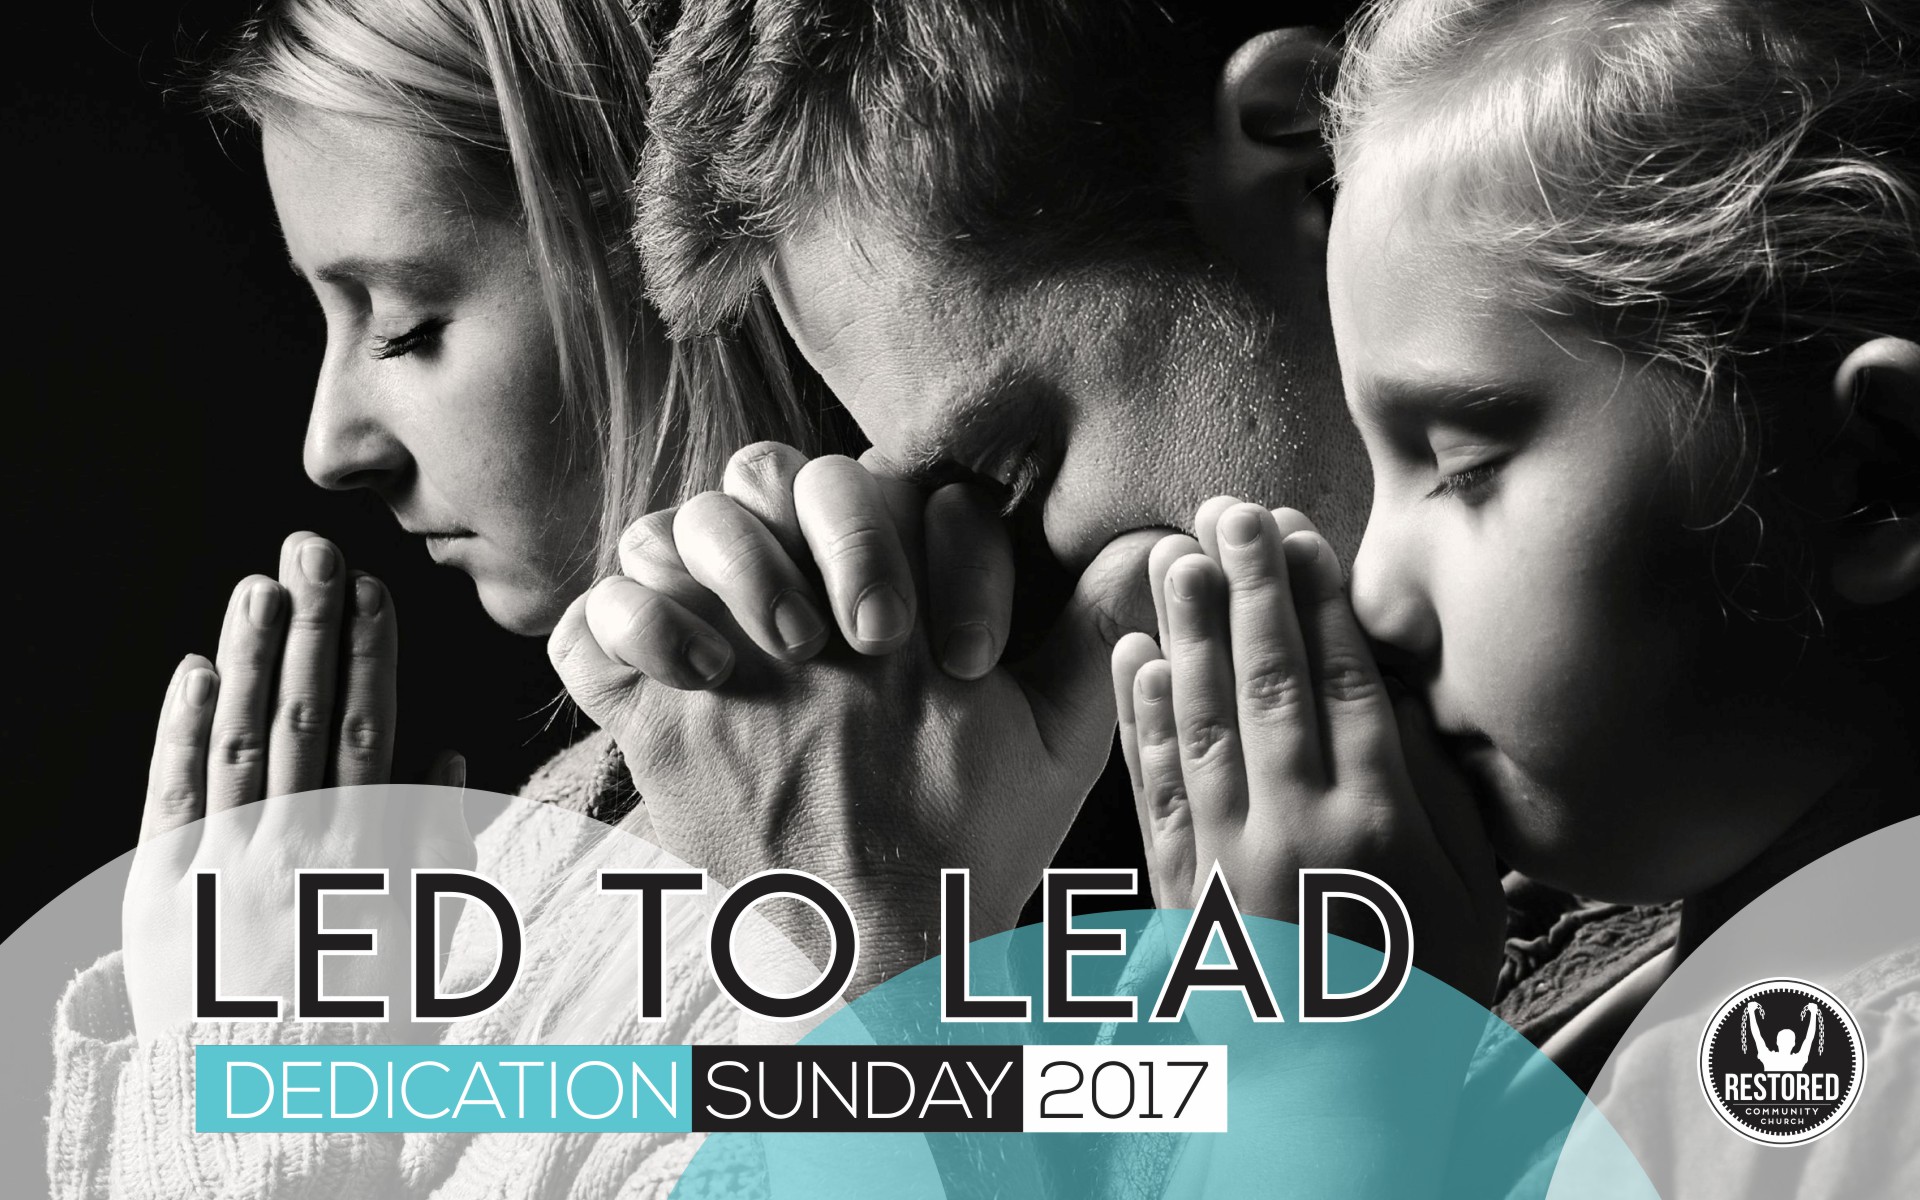 Led to Lead; Dedication Sunday 2017